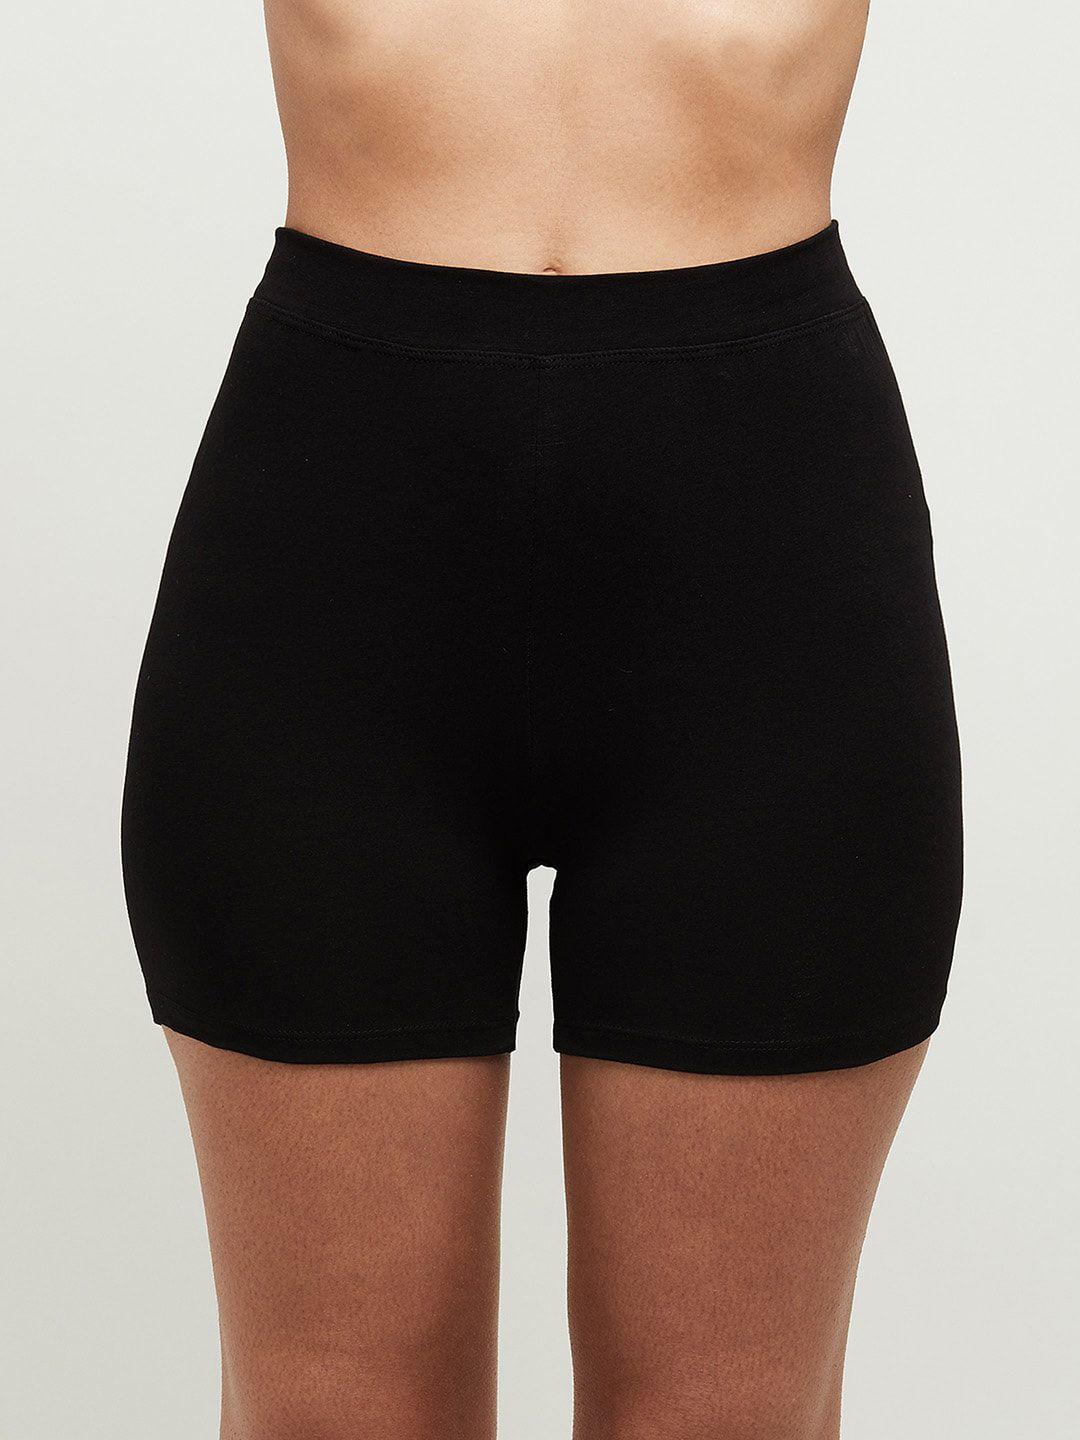 max-women-black-solid-high-rise-boy-shorts-pa21cbs01black